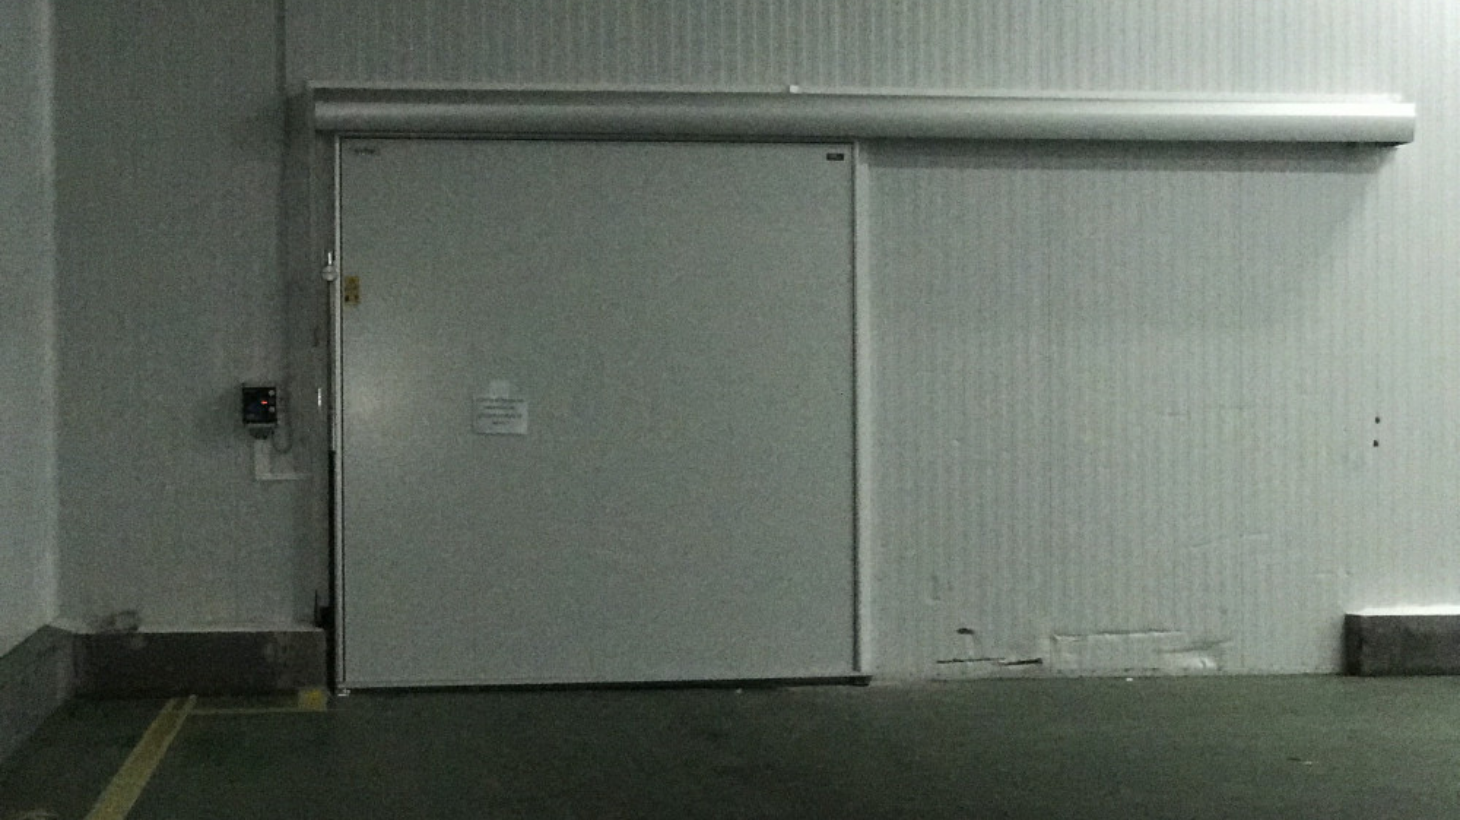 Puerta corredera frigorífica, de la marca Infraca.  